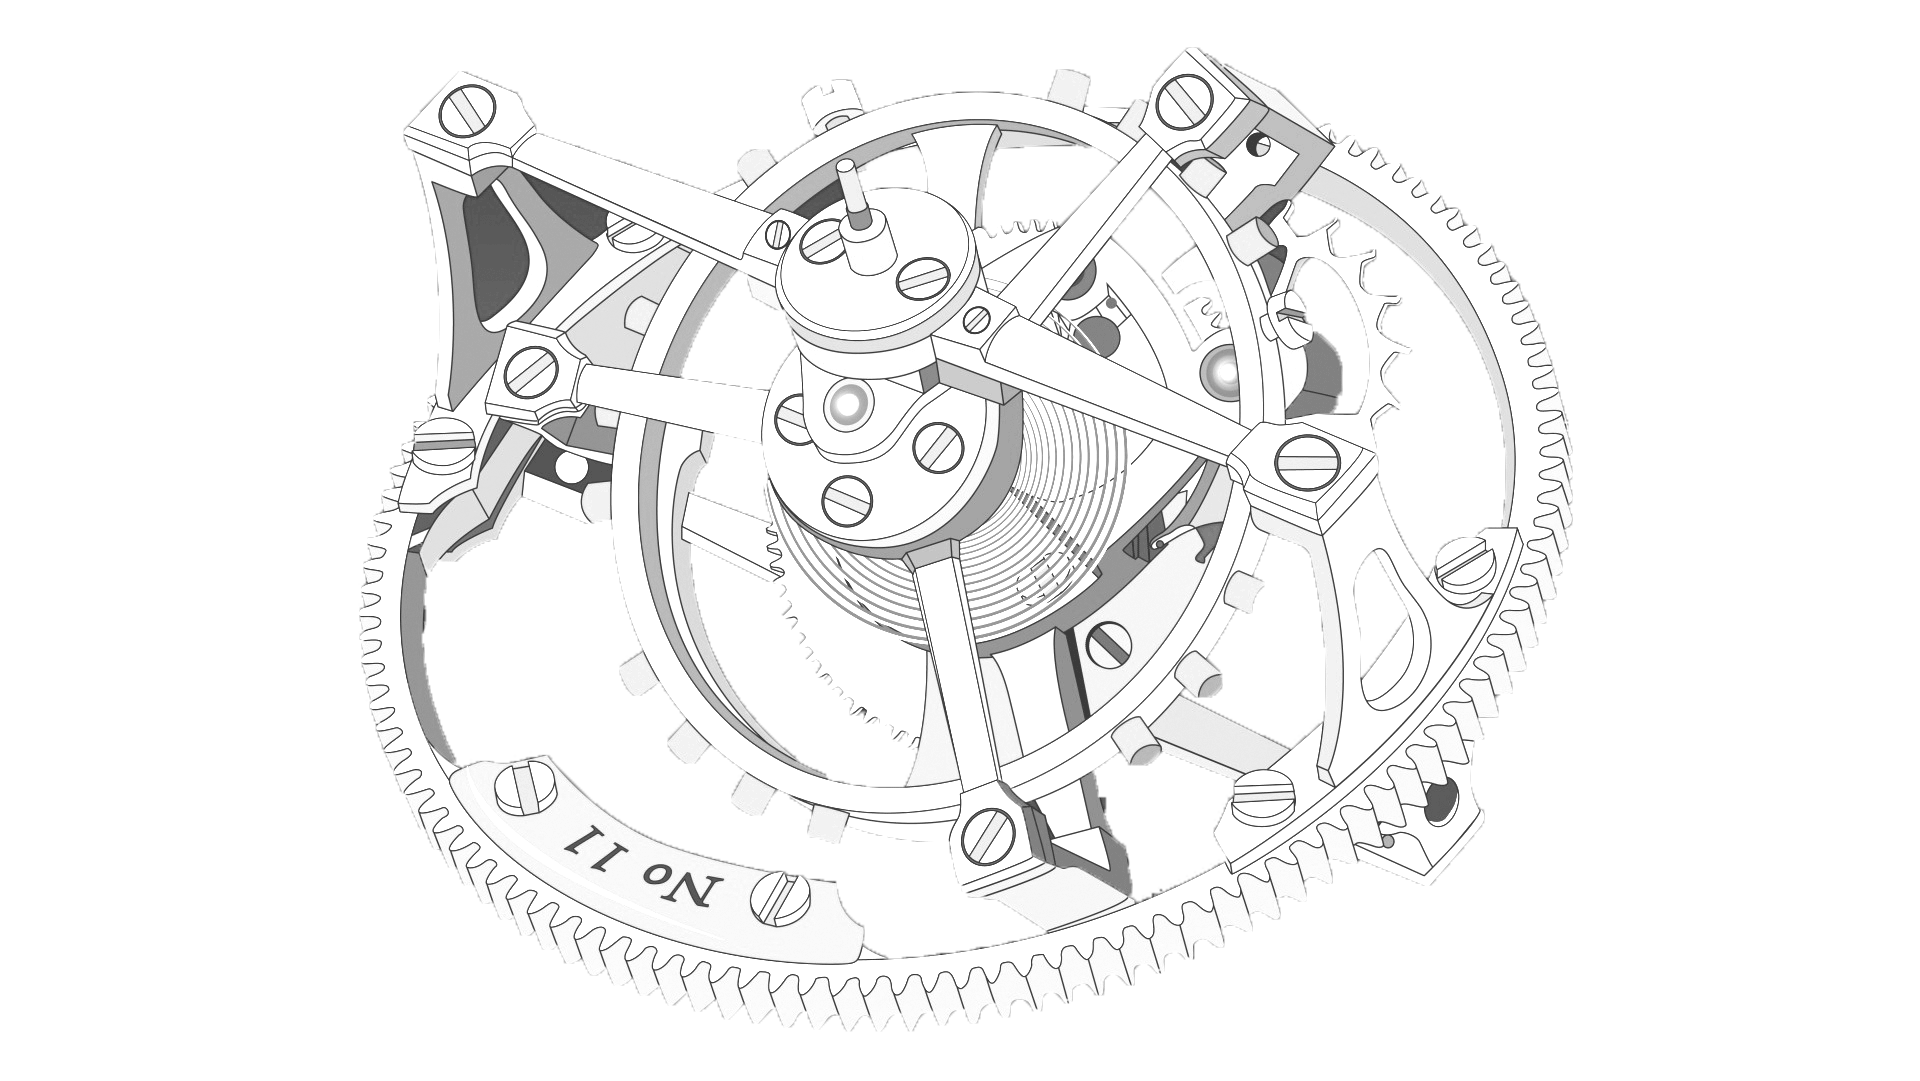 Uhrmacher/in – Zeitmesstechniker/in